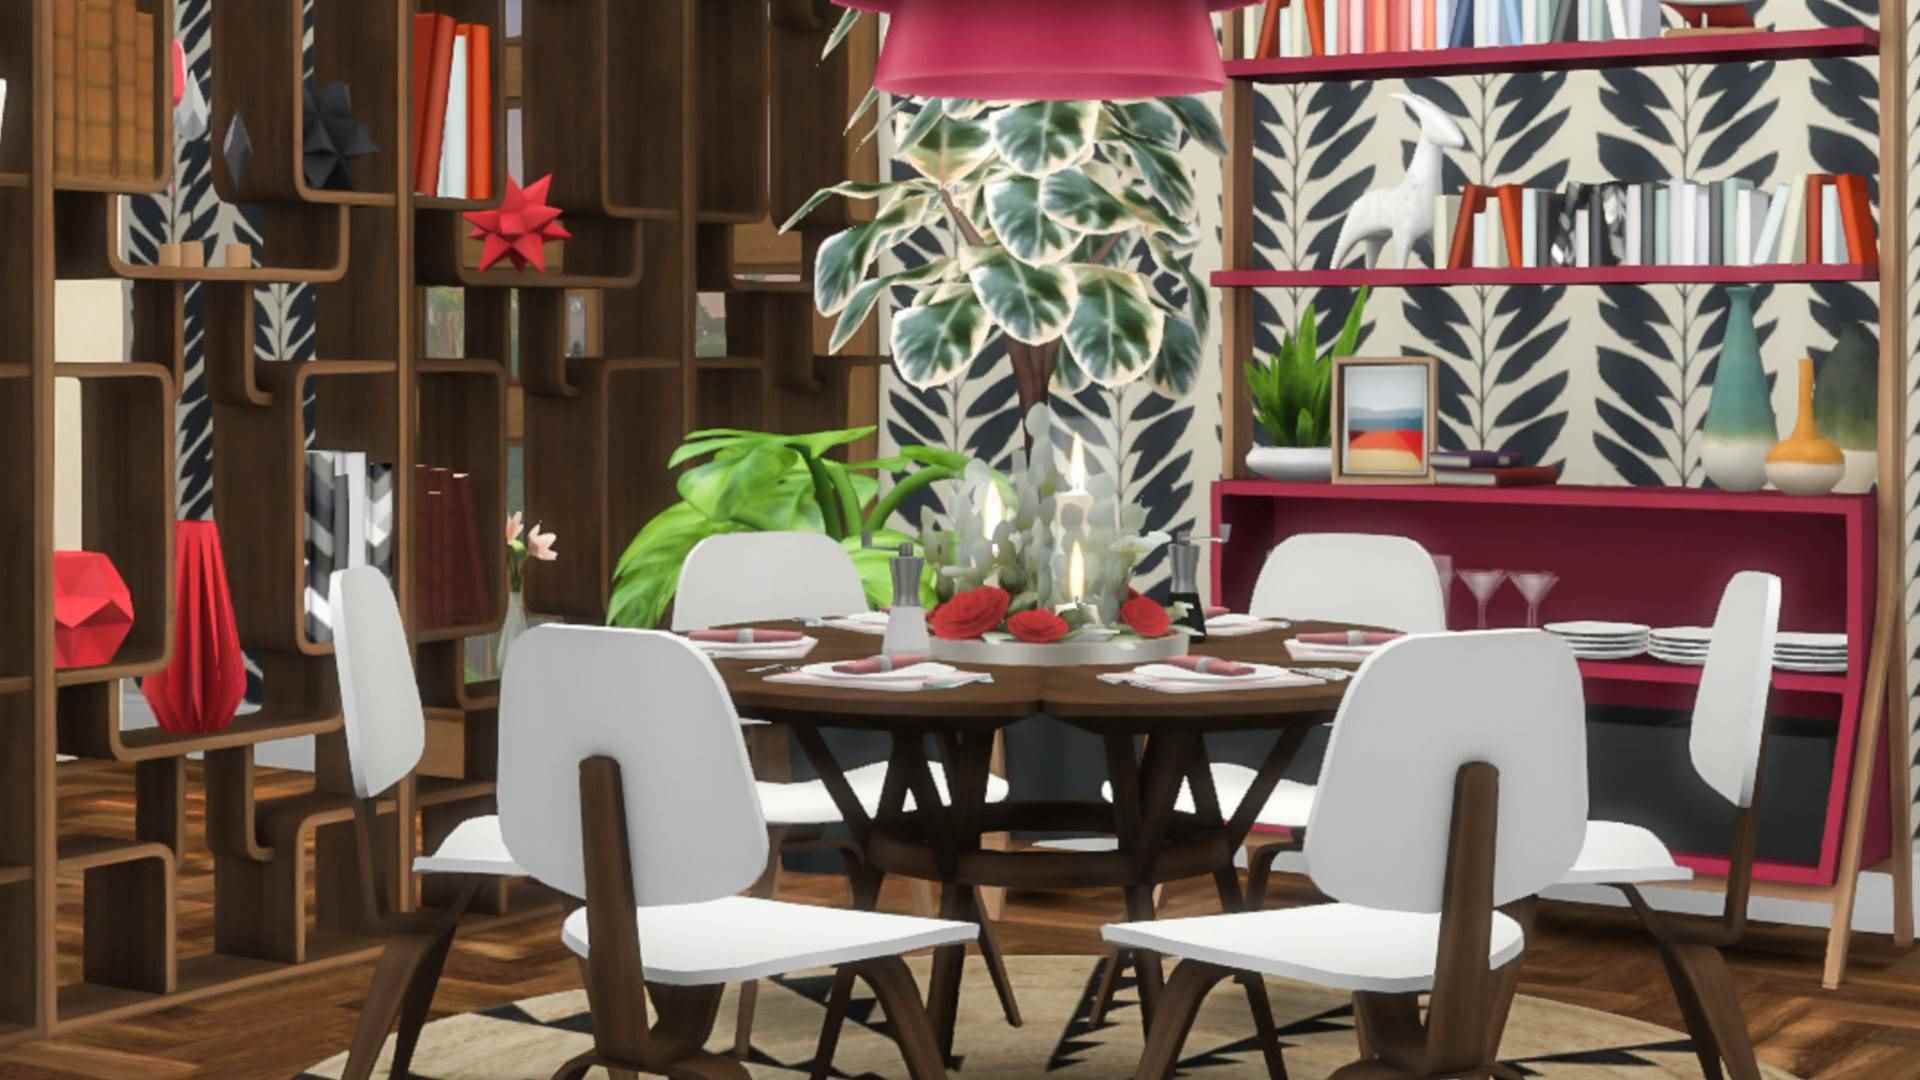 Sims 4 CC: Parlak, desenli dekorasyonlar ve mobilyalarla döşenmiş bir yemek odası